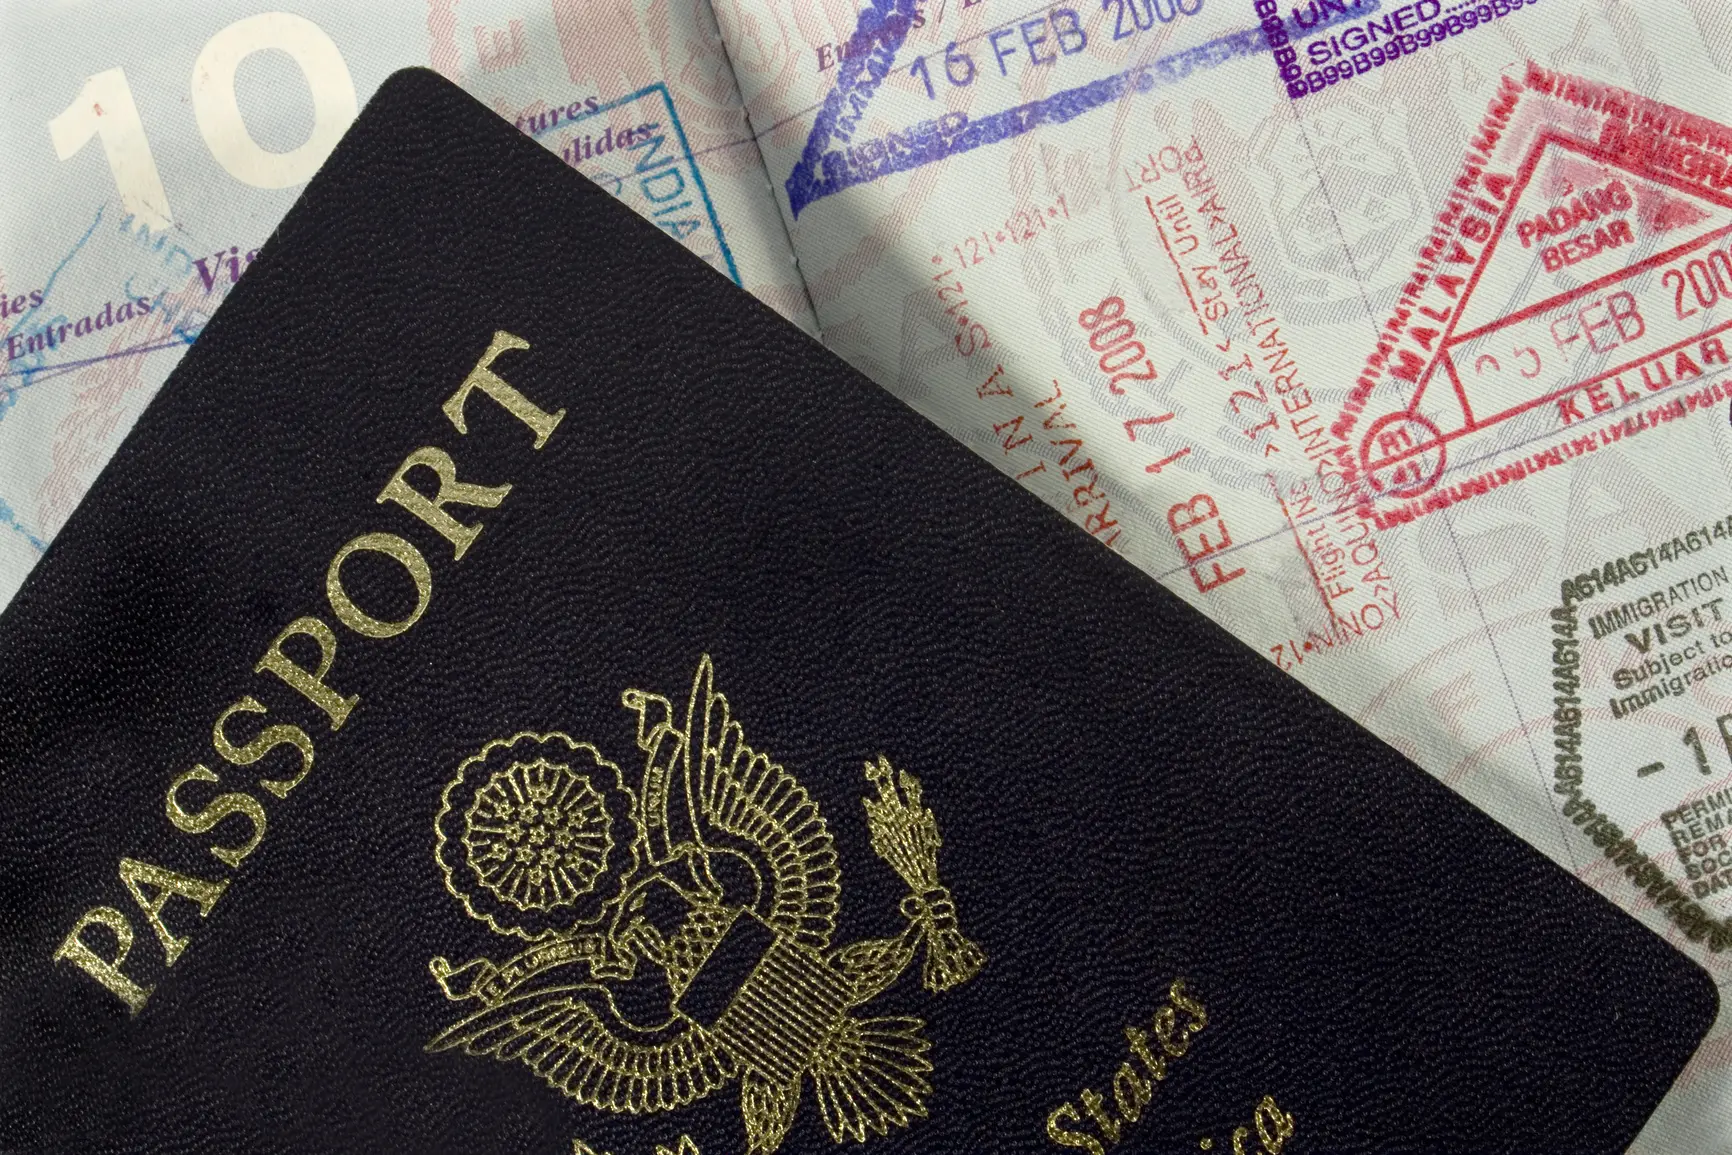 آخرین وضعیت لغو ویزا بین ایران و عراق